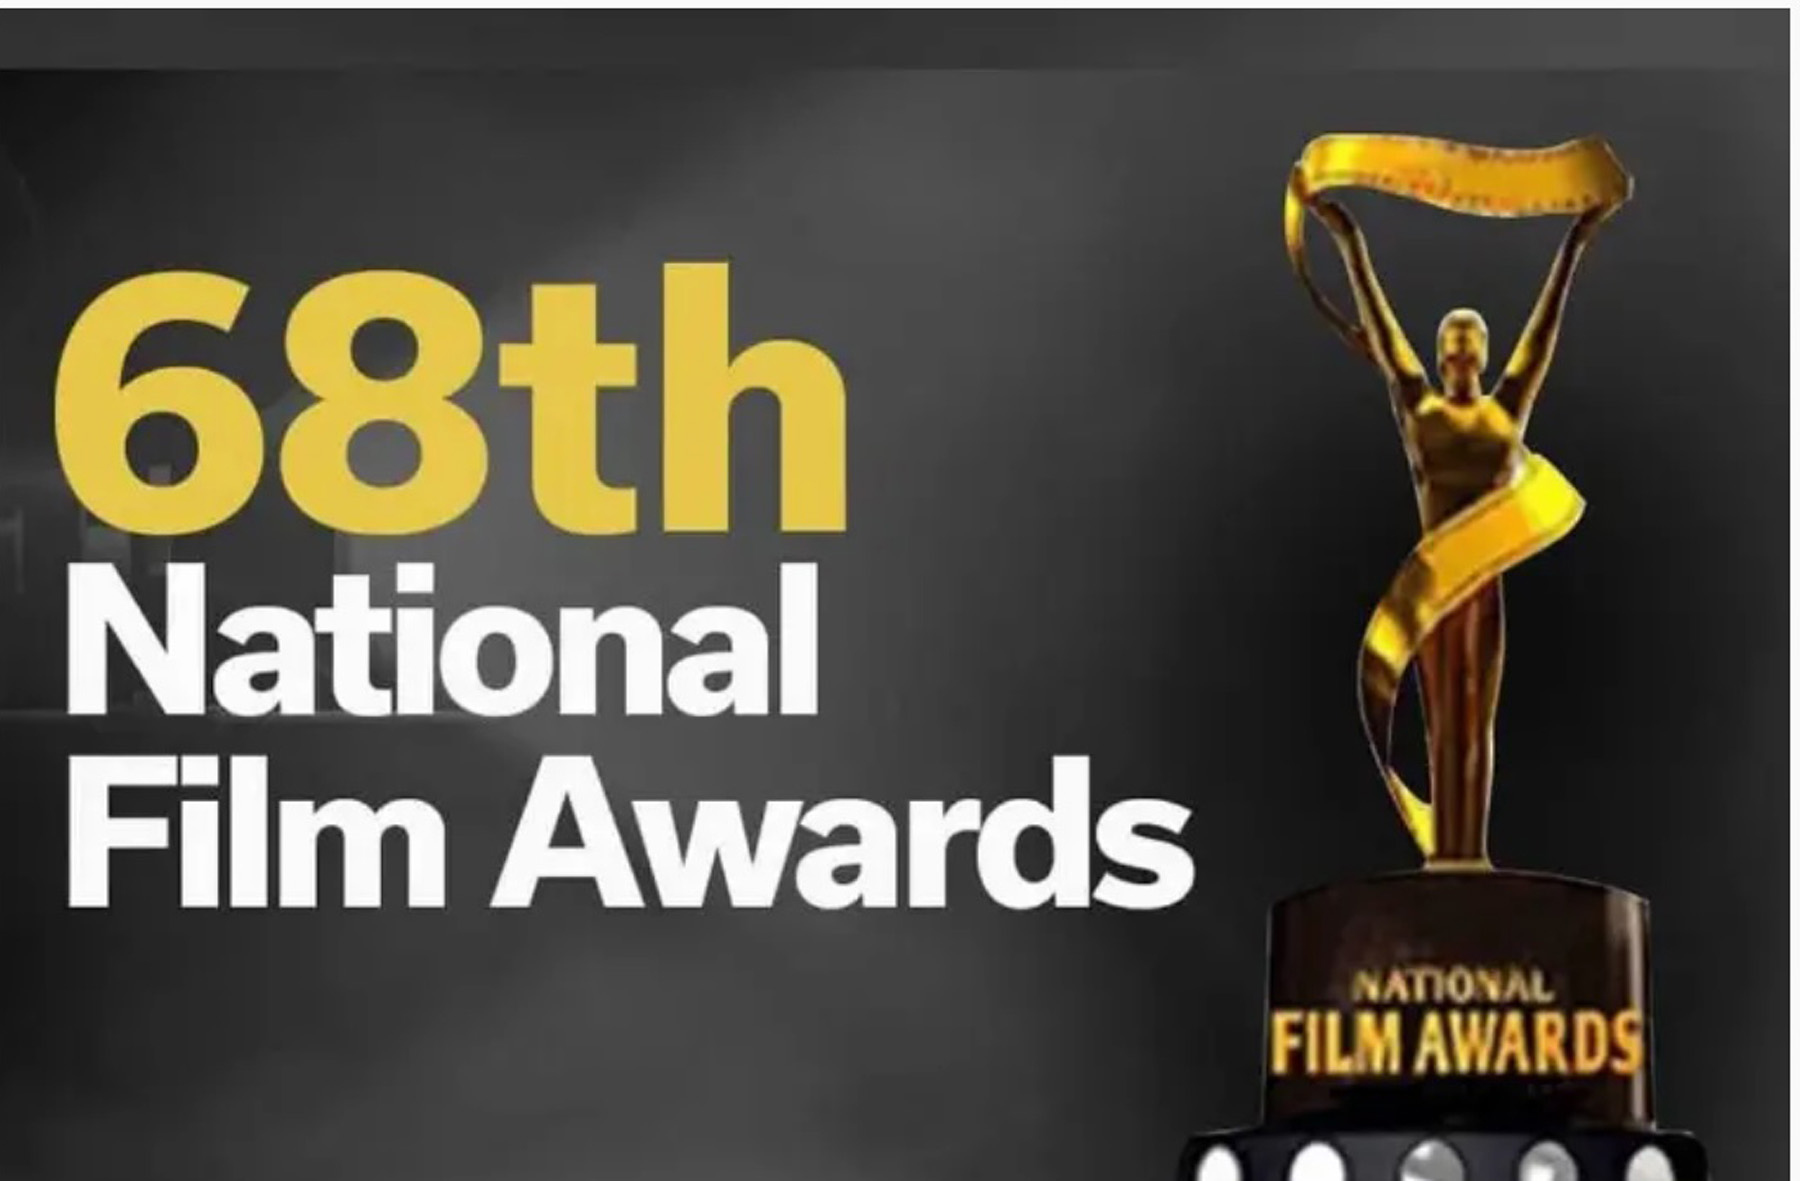 68 व्या राष्ट्रीय चित्रपट पुरस्कारांची घोषणा ‘तानाजी’ आणि ‘सुमी’ या चित्रपटांसह अनेक मराठी चित्रपटांनी राष्ट्रीय चित्रपट पुरस्कारांवर कोरले नाव ‘गोष्ट एका पैठणीची’ठरला सर्वोत्कृष्ट मराठी चित्रपट